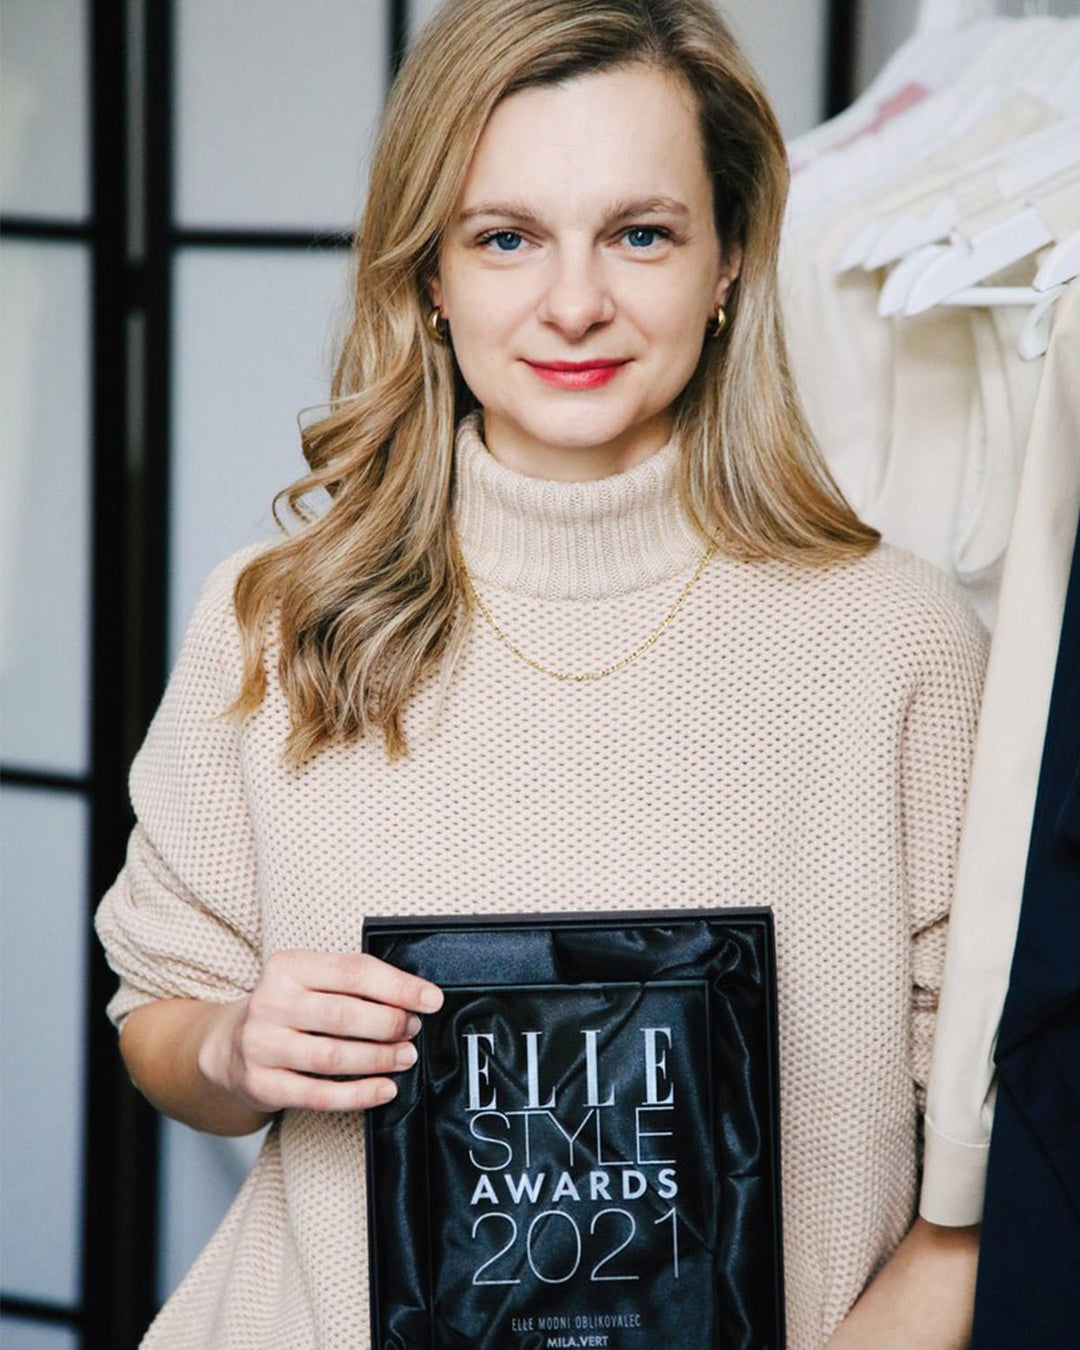 Mila.Vert Wins Elle Style Award for Best Designer